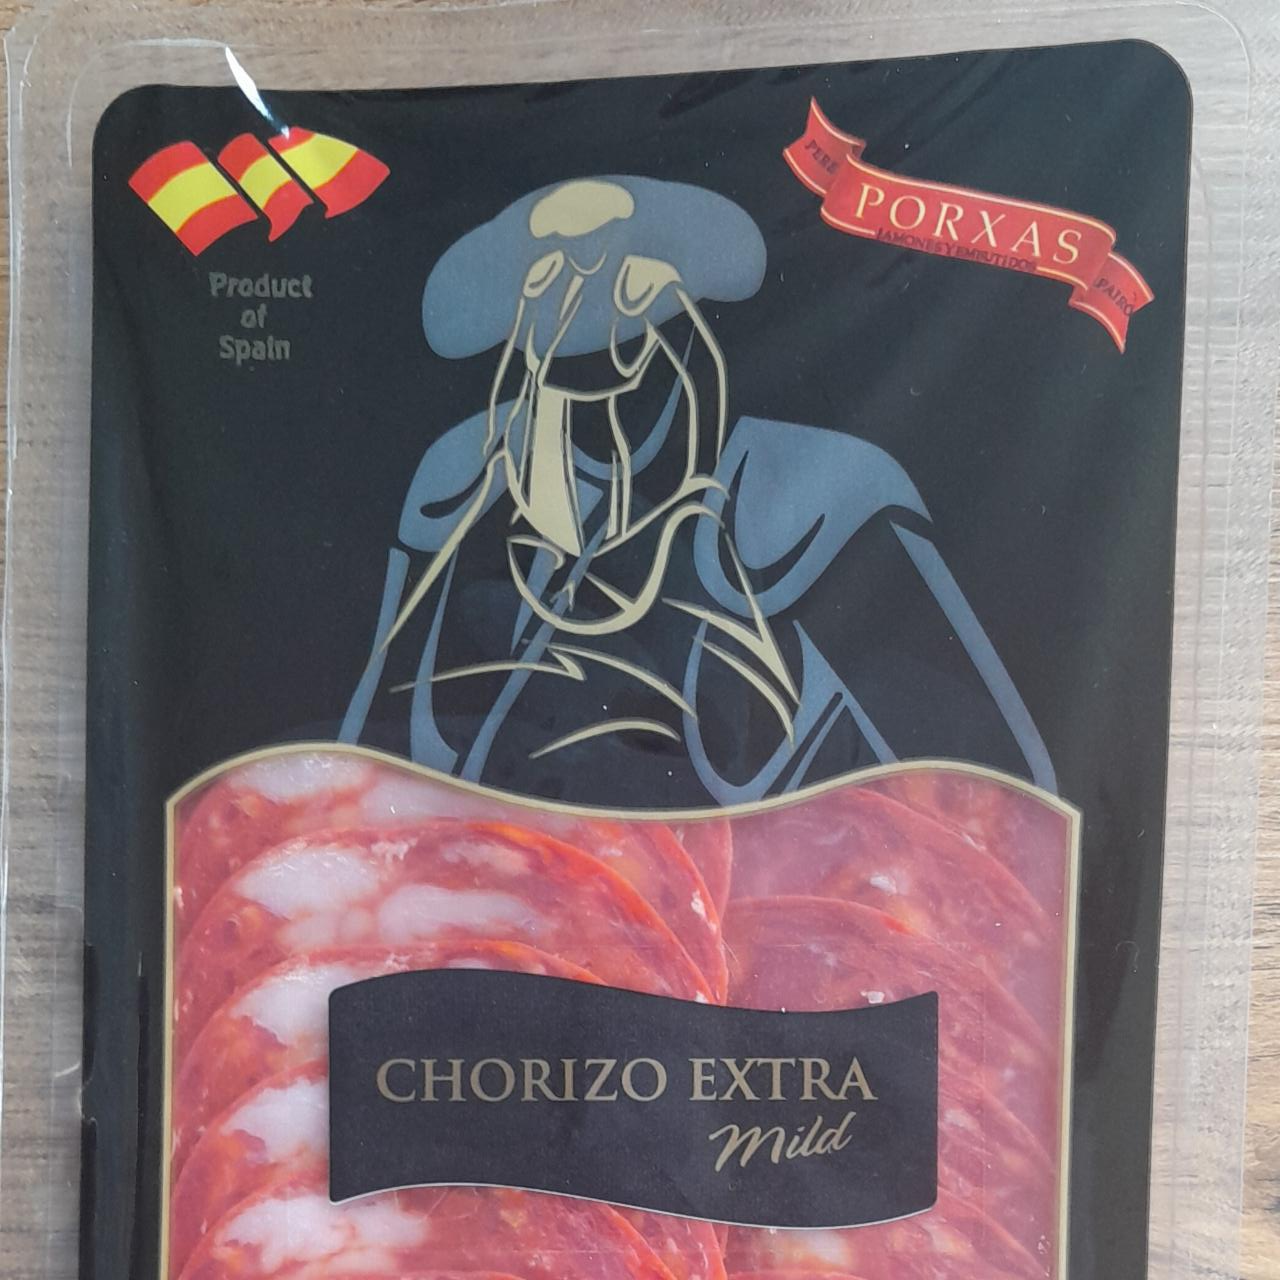 Zdjęcia - Chorizo extra miLD Porxas